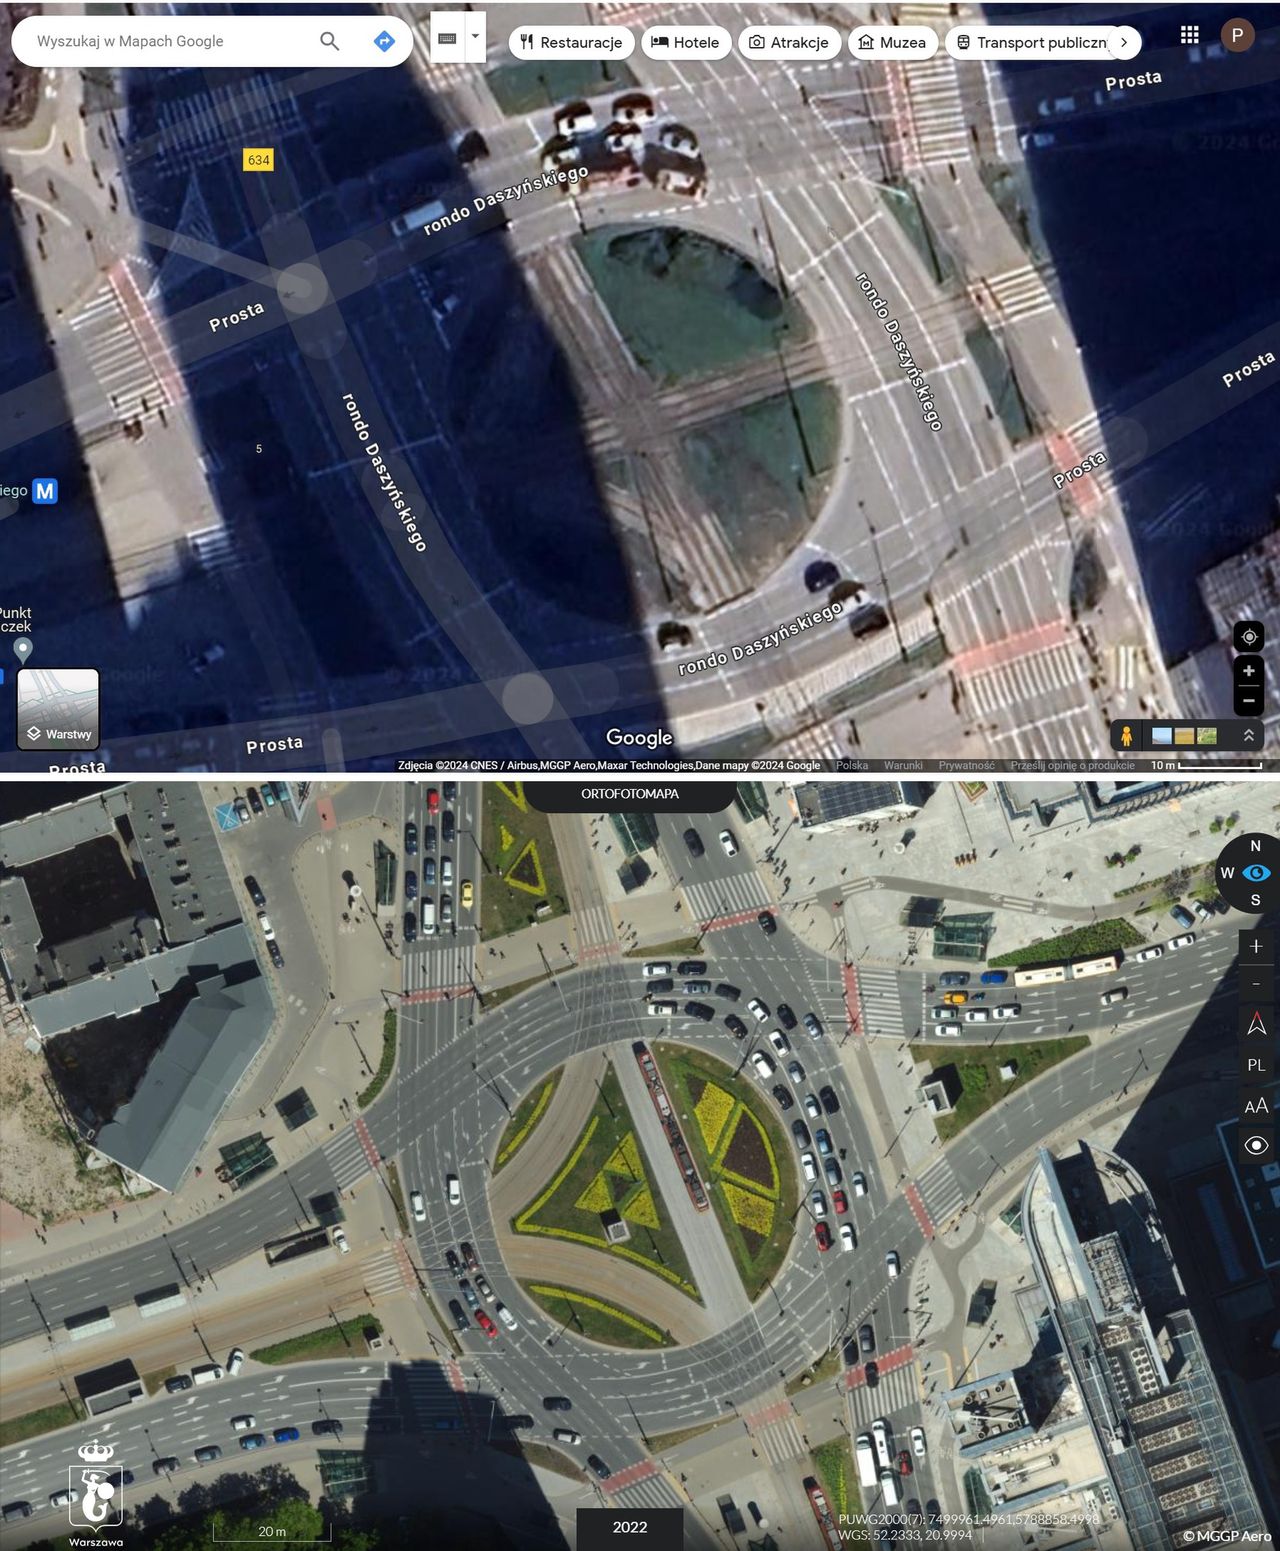 Porównanie zdjęć Ronda Daszyńskiego w Warszawie - zdjęcie satelitarne z Google Maps (u góry) i zdjęcie lotnicze z UM Warszawa (na dole)